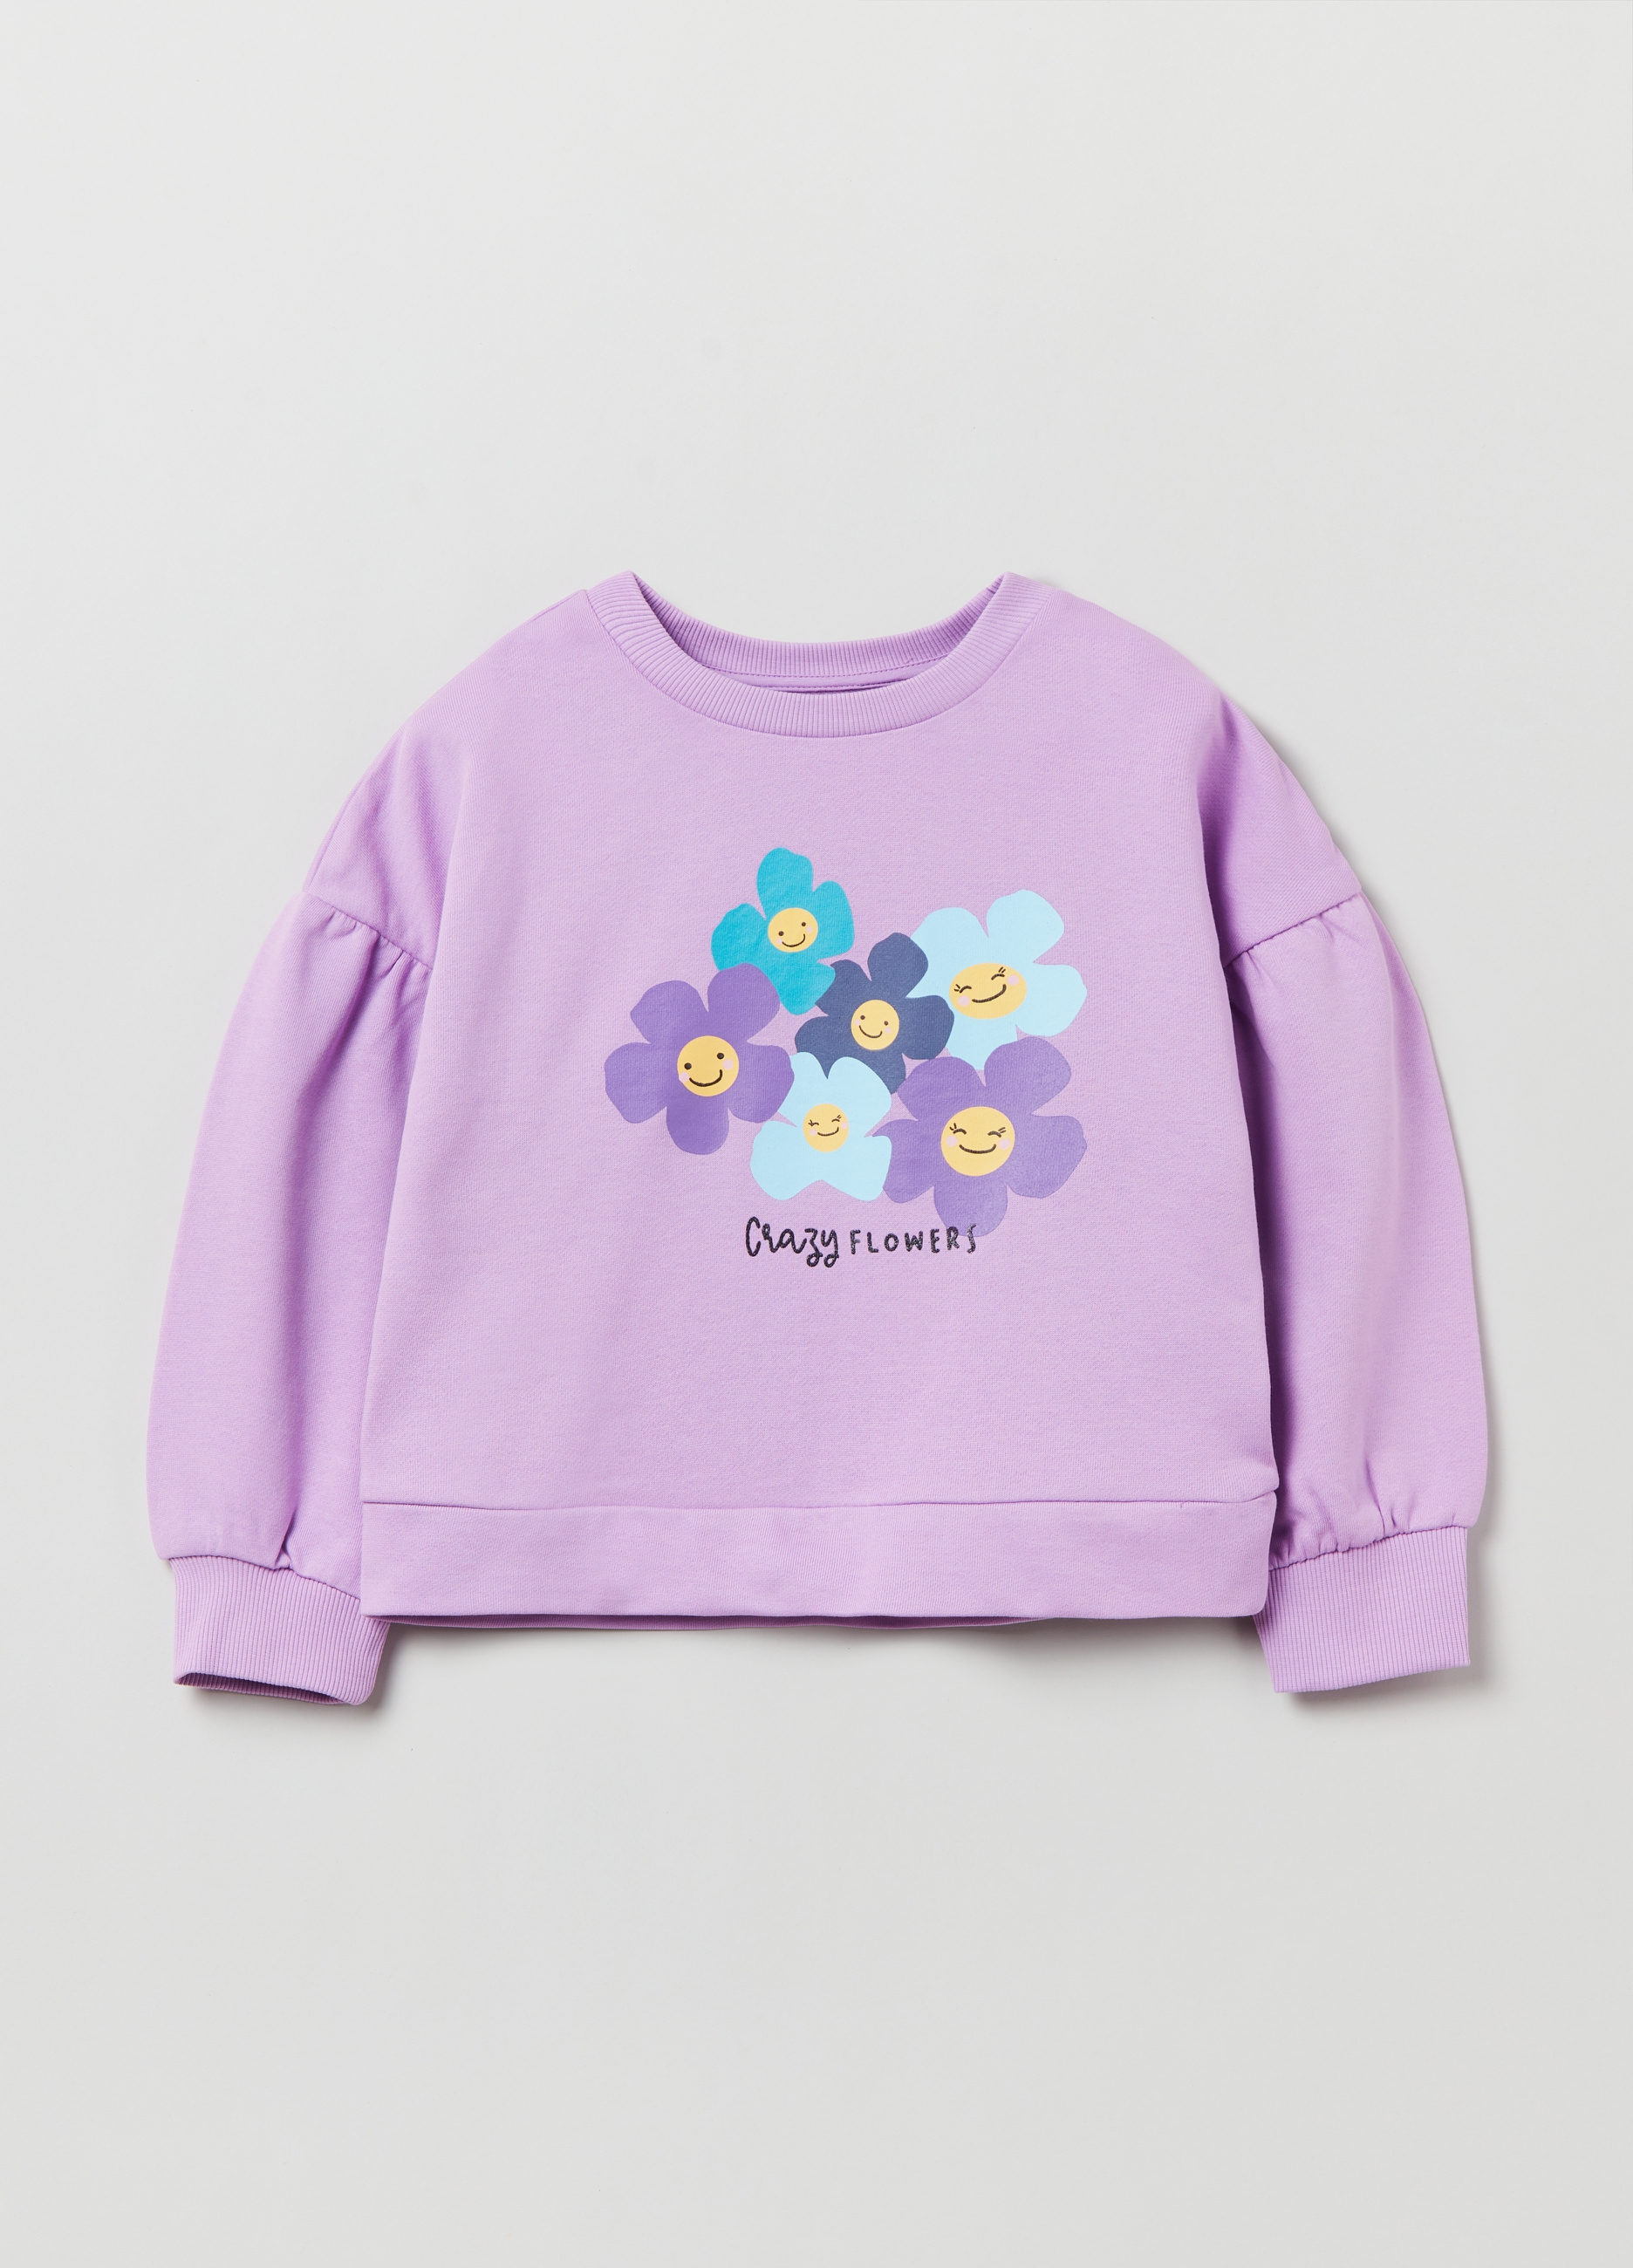 Фуфайка OVS для девочек, фиолетовая, 7-8 лет, 1893089 комплект трикотажный для девочек фуфайка футболка с длинными рукавами брюки легинсы